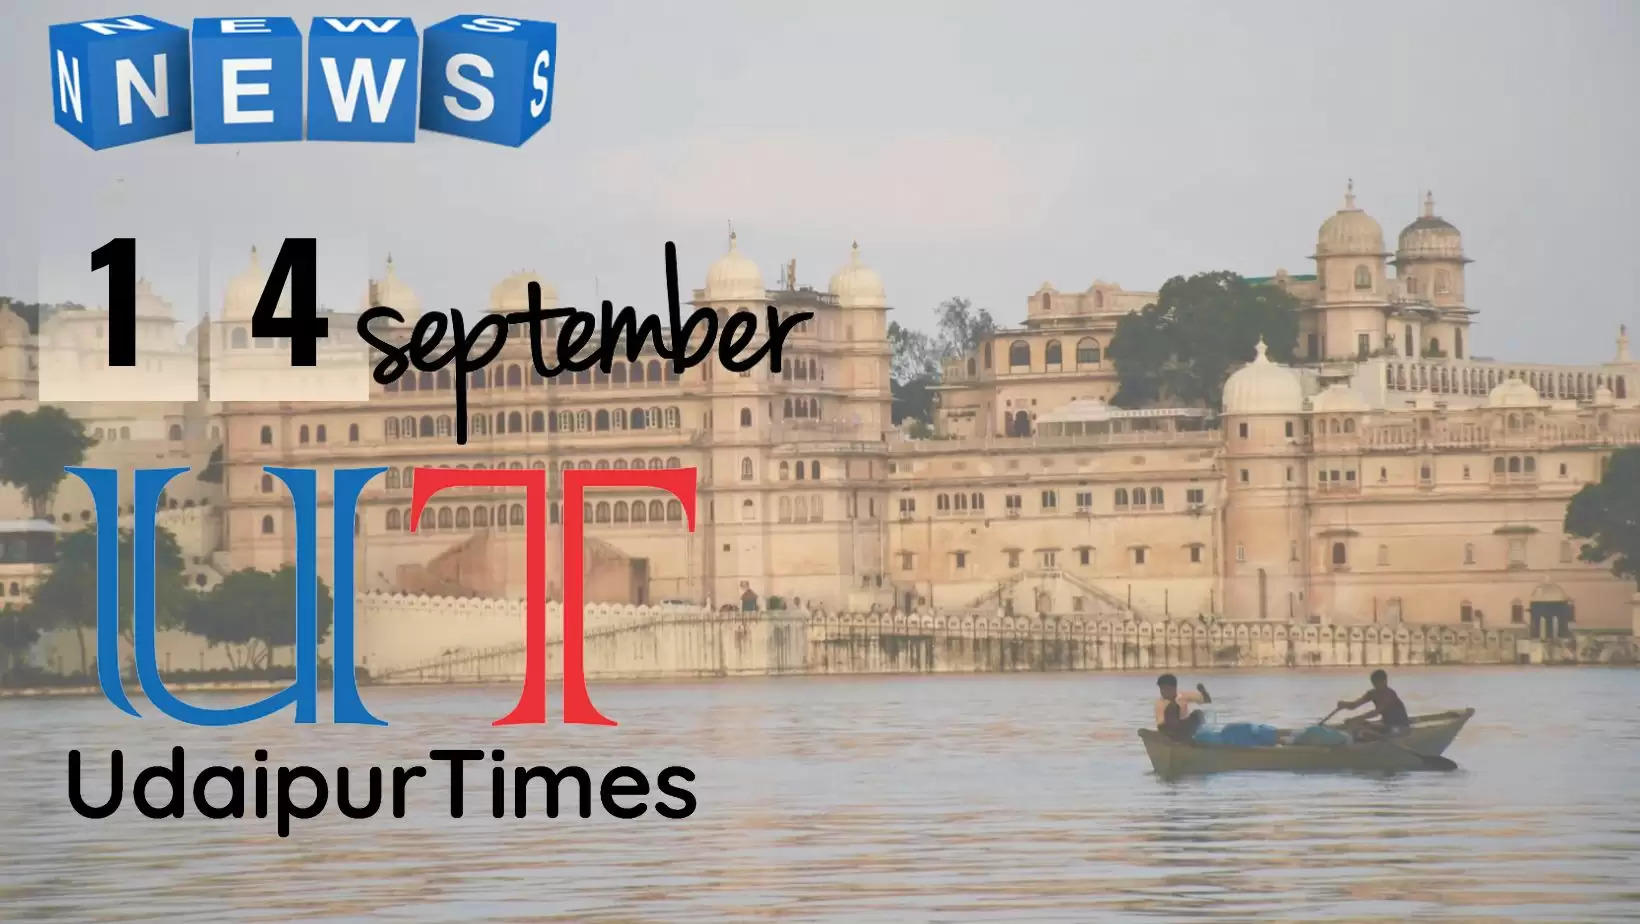 Udaipur News 14 September, Latest News from Udaipur Division, Latest news from Udaipur,  Top News from Udaipur,  Udaipur News Today,  उदयपुर की प्रमुख खाबरें , उदयपुर खबर, उदयपुर टाइम्स, उदयपुर न्यूज 